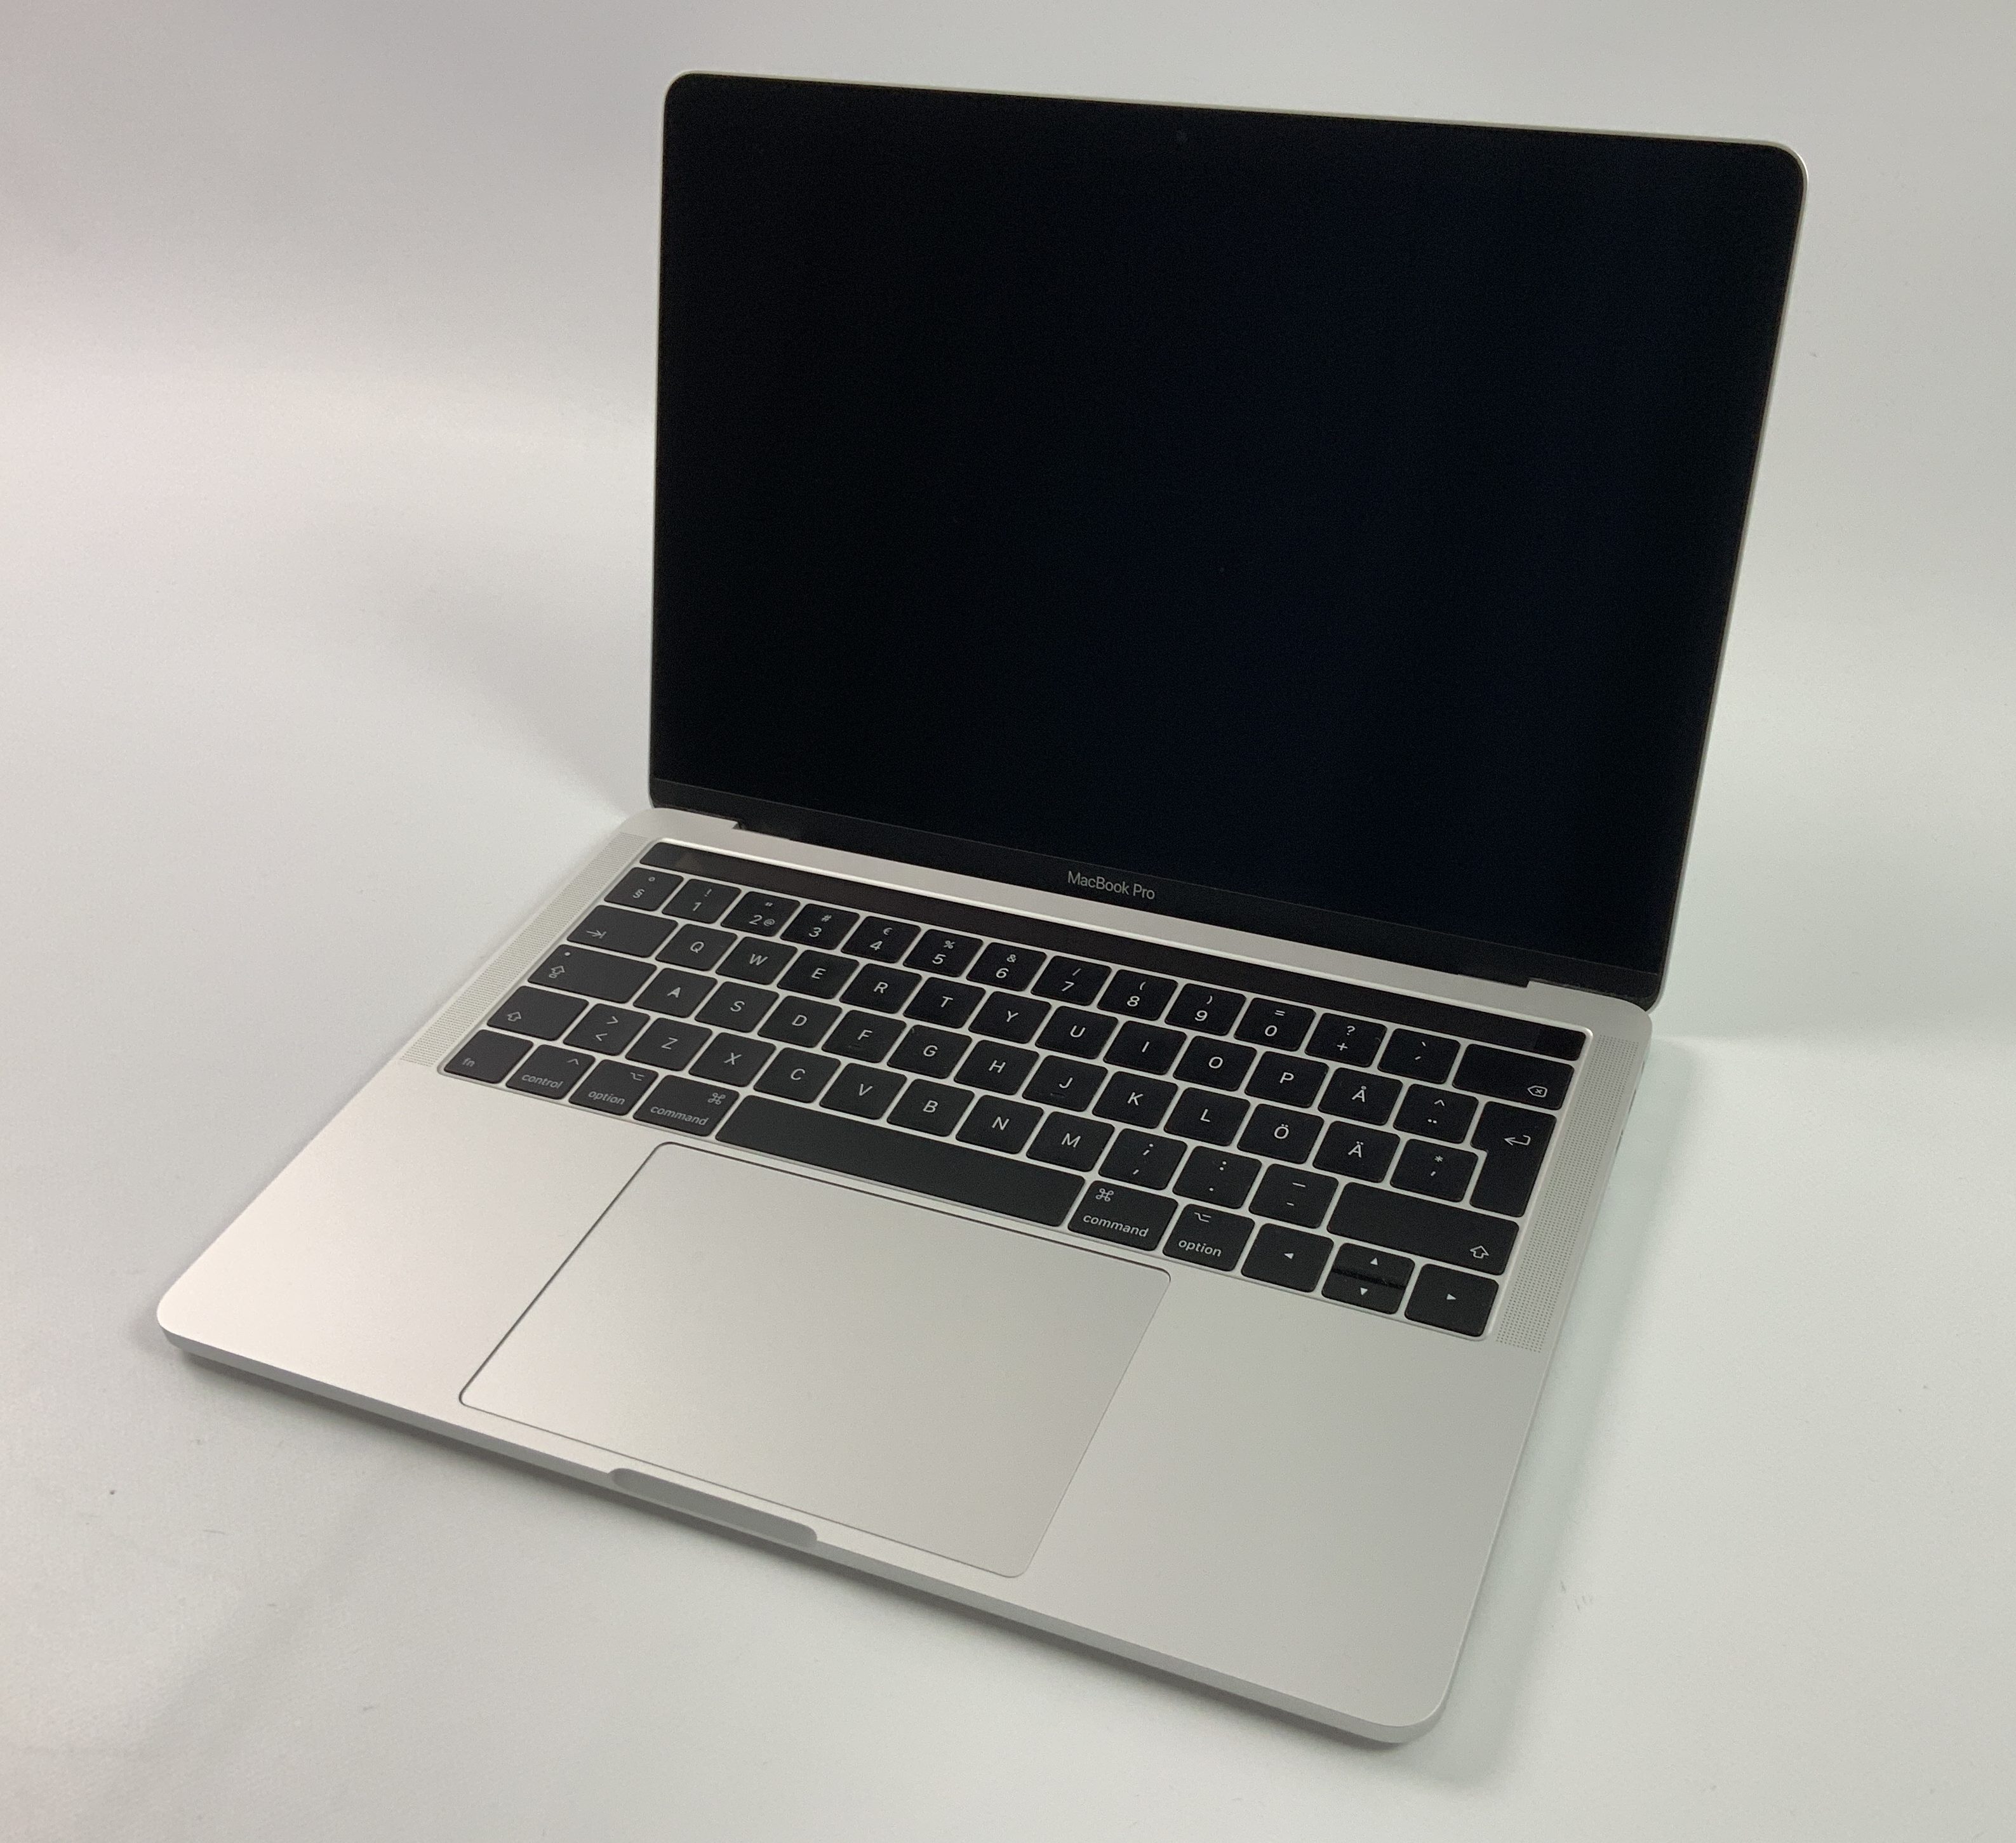 MacBook Pro 13" 4TBT Mid 2017 (Intel Core i5 3.1 GHz 8 GB RAM 256 GB SSD), Silver, Intel Core i5 3.1 GHz, 8 GB RAM, 256 GB SSD, Afbeelding 1